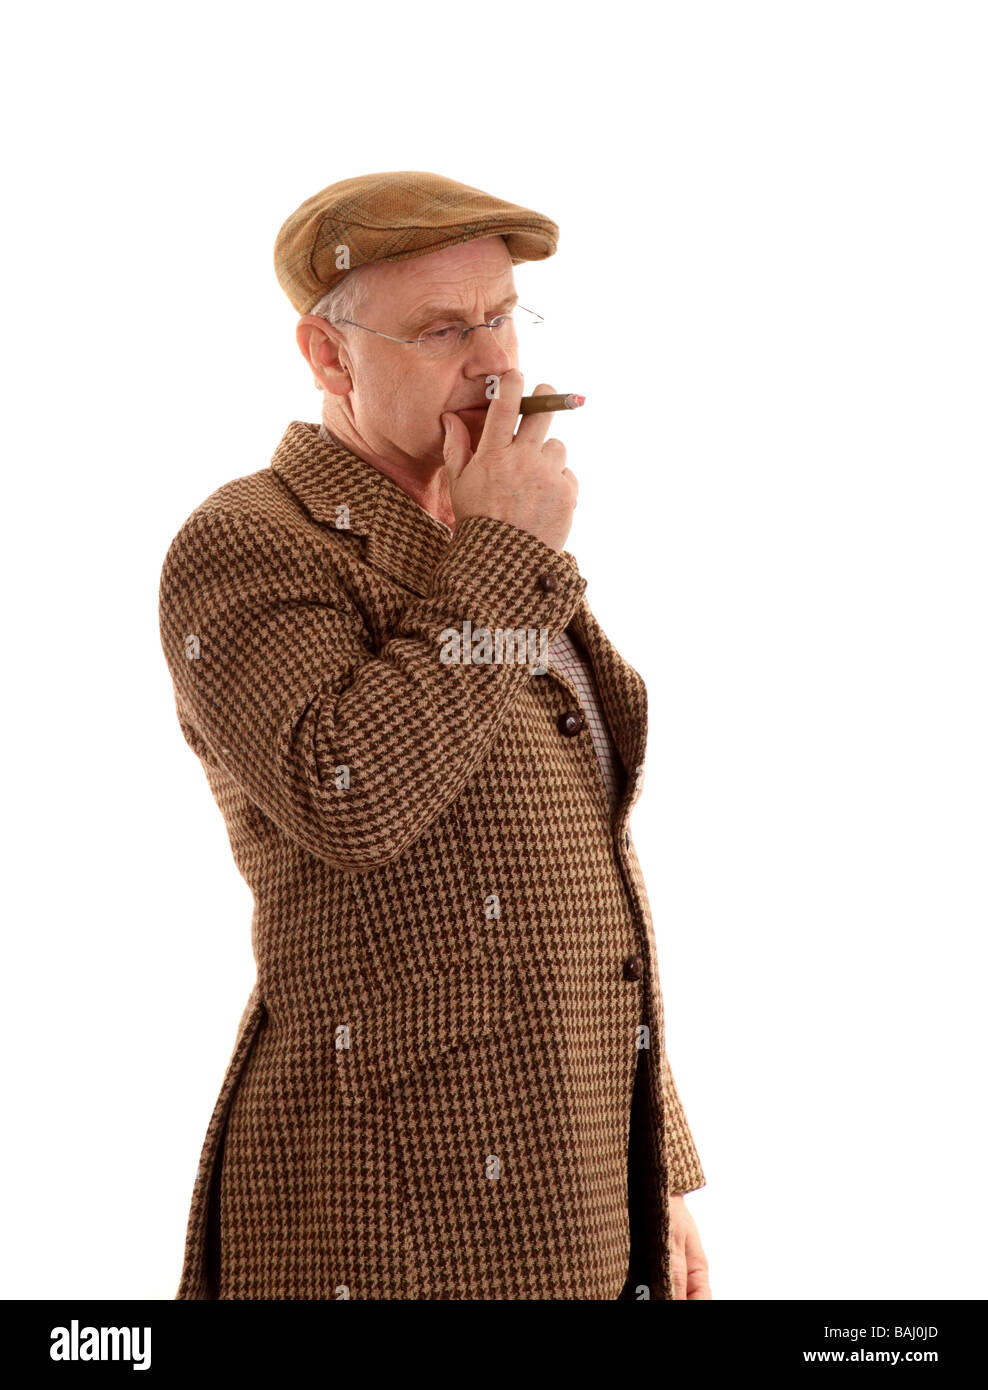 Avril 2009 - Anglais pays gent dans un Harris tweed veste fumant un grand cigare Banque D'Images